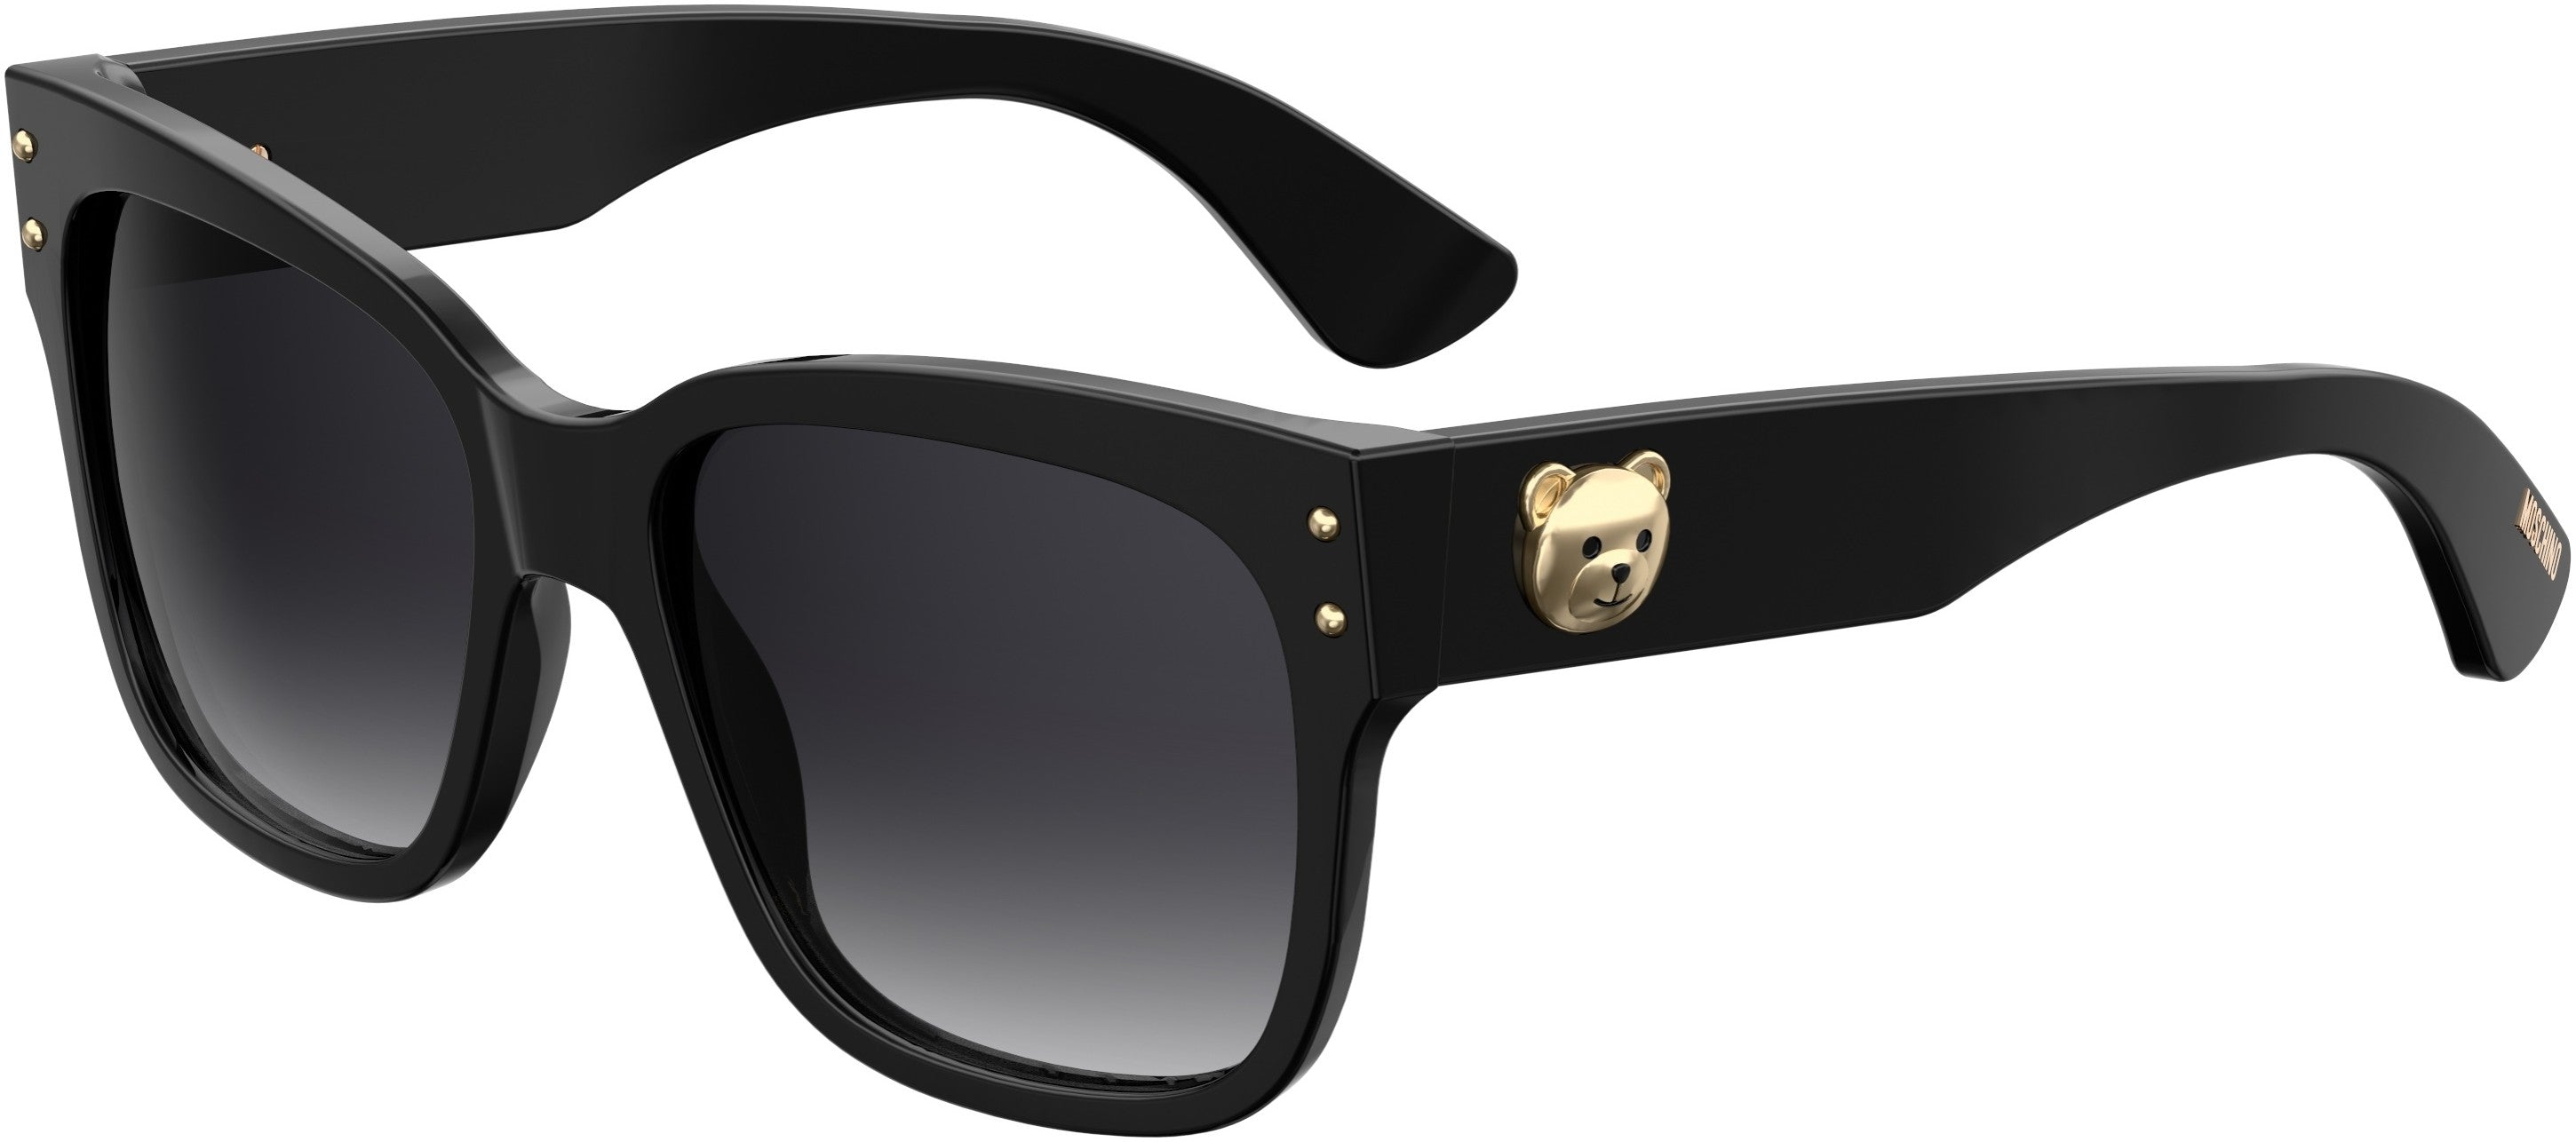  Moschino 008/S Rectangular Sunglasses 0807-0807  Black (9O Dark Gray Gradient)